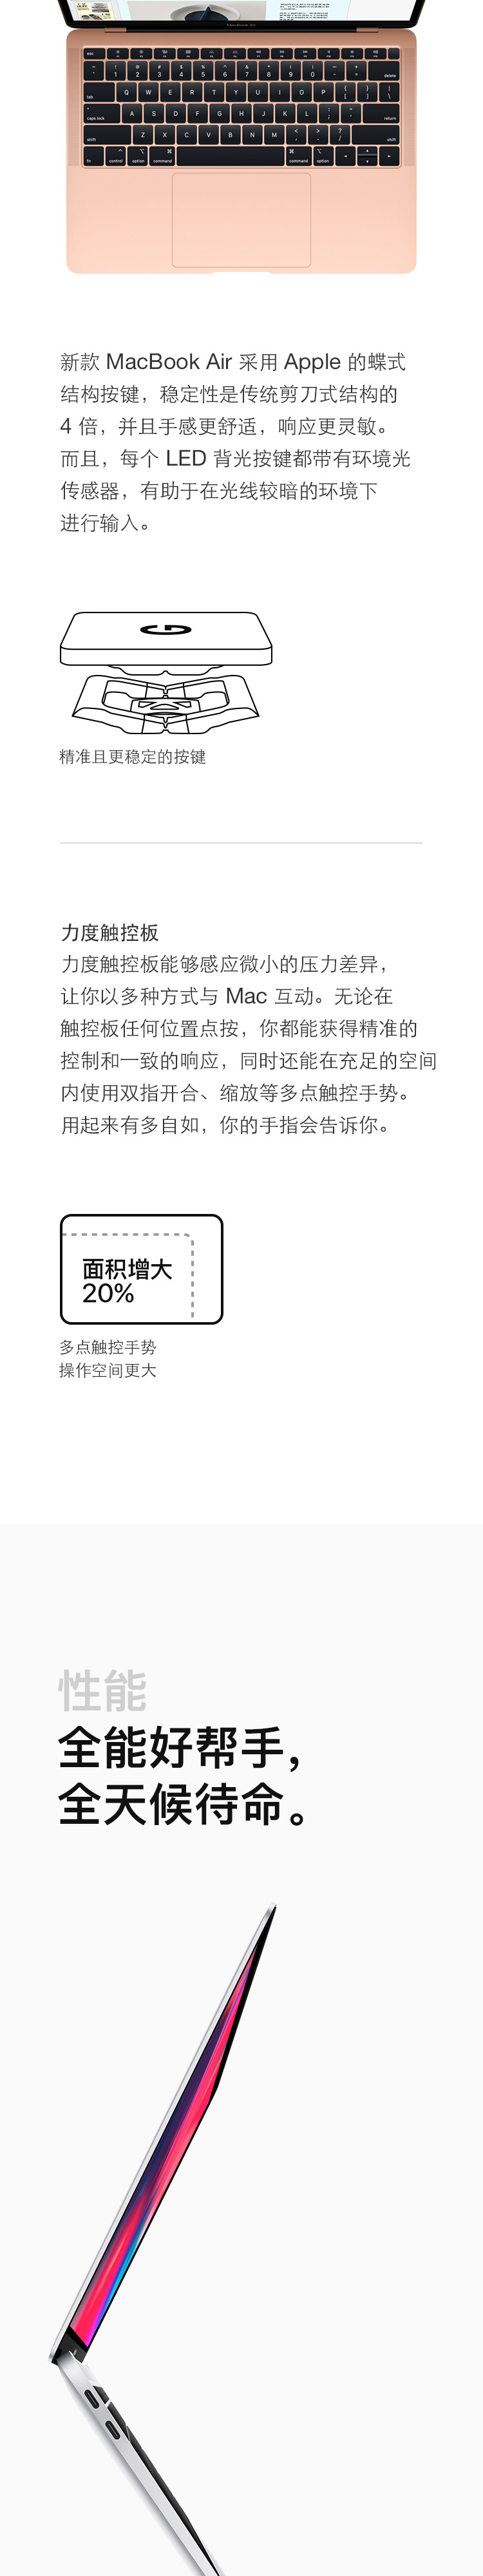 中山手机网 苹果(apple) macbook air 2019手机专卖